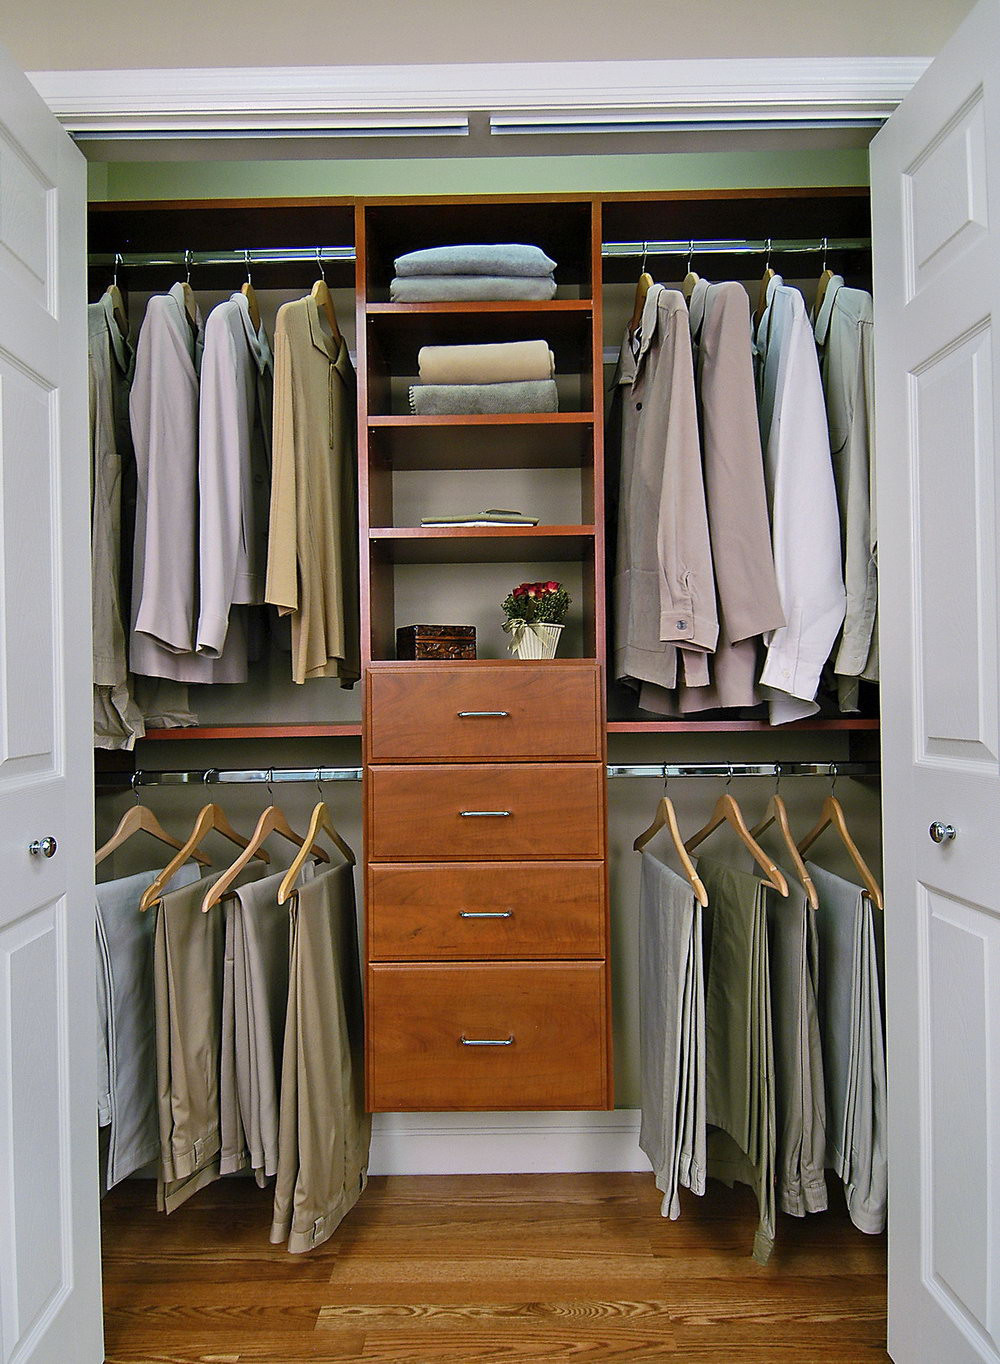 Best ideas about DIY Walk In Closet Organizer
. Save or Pin Diy Walk In Closet Organizer Now.